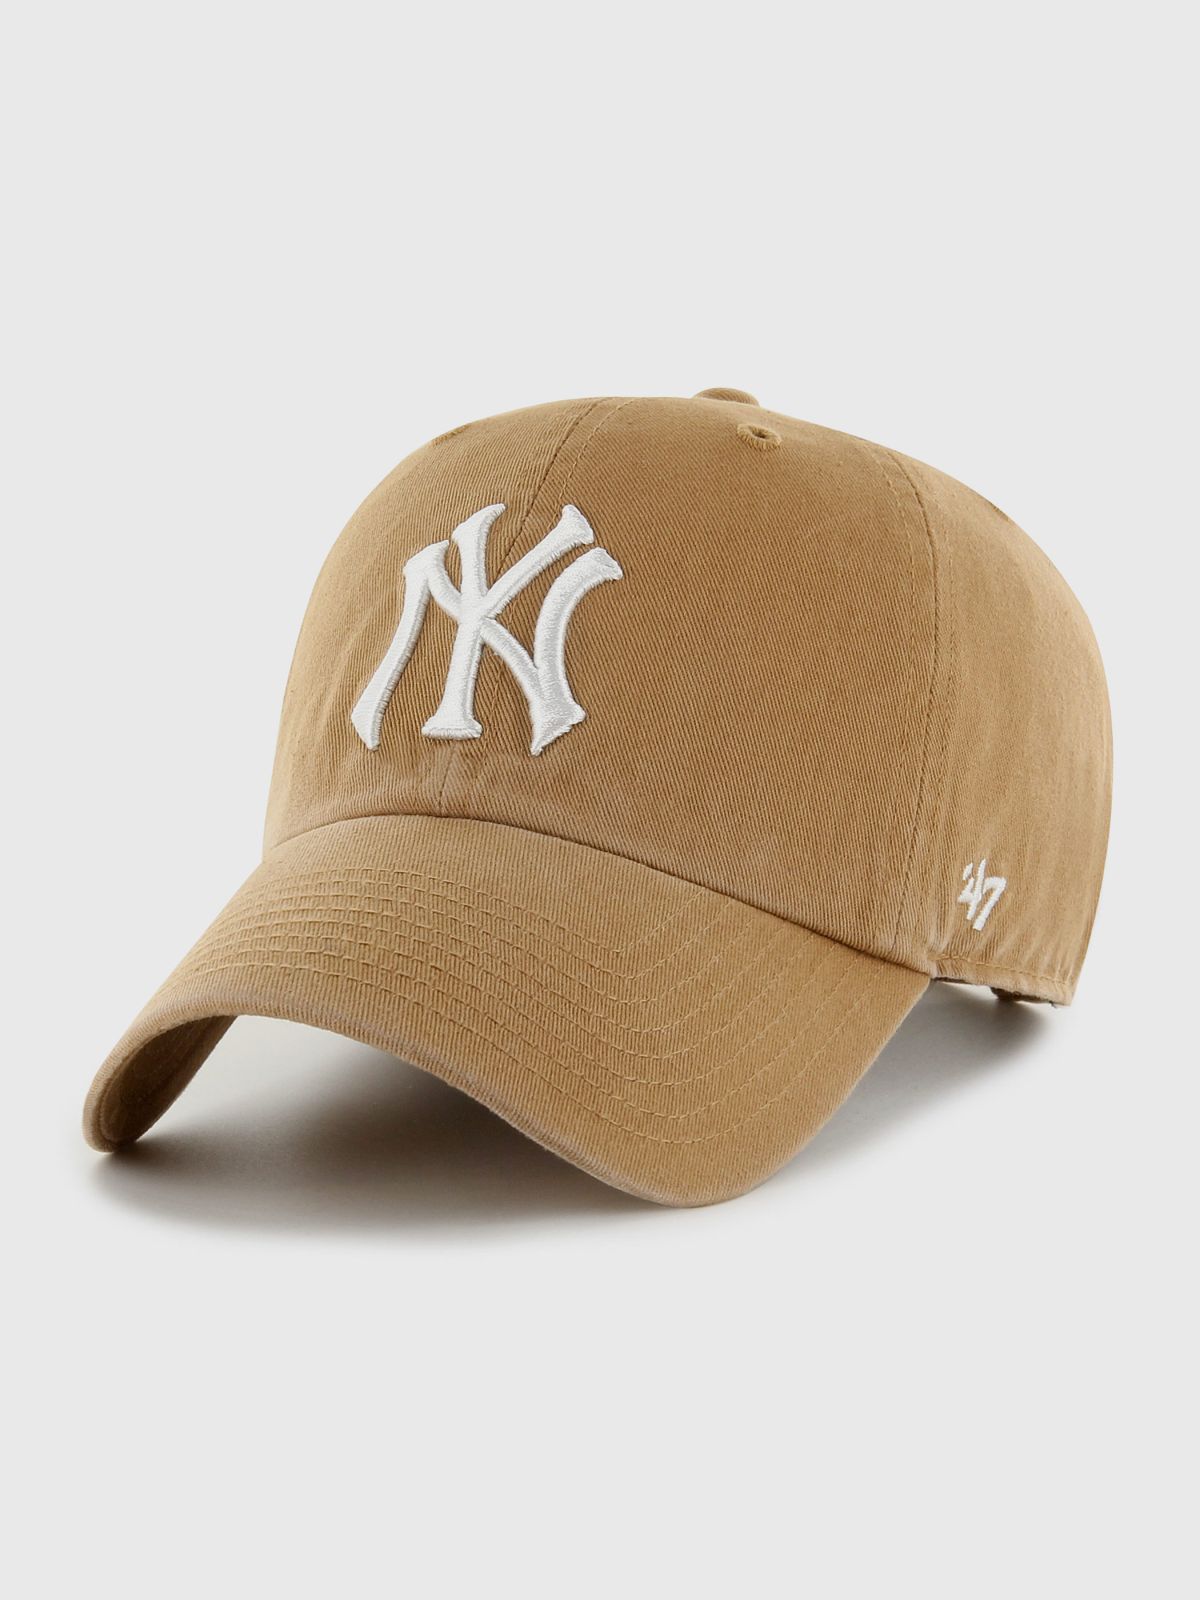  כובע מצחייה עם רקמת לוגו / יוניסקס של BRAND 47